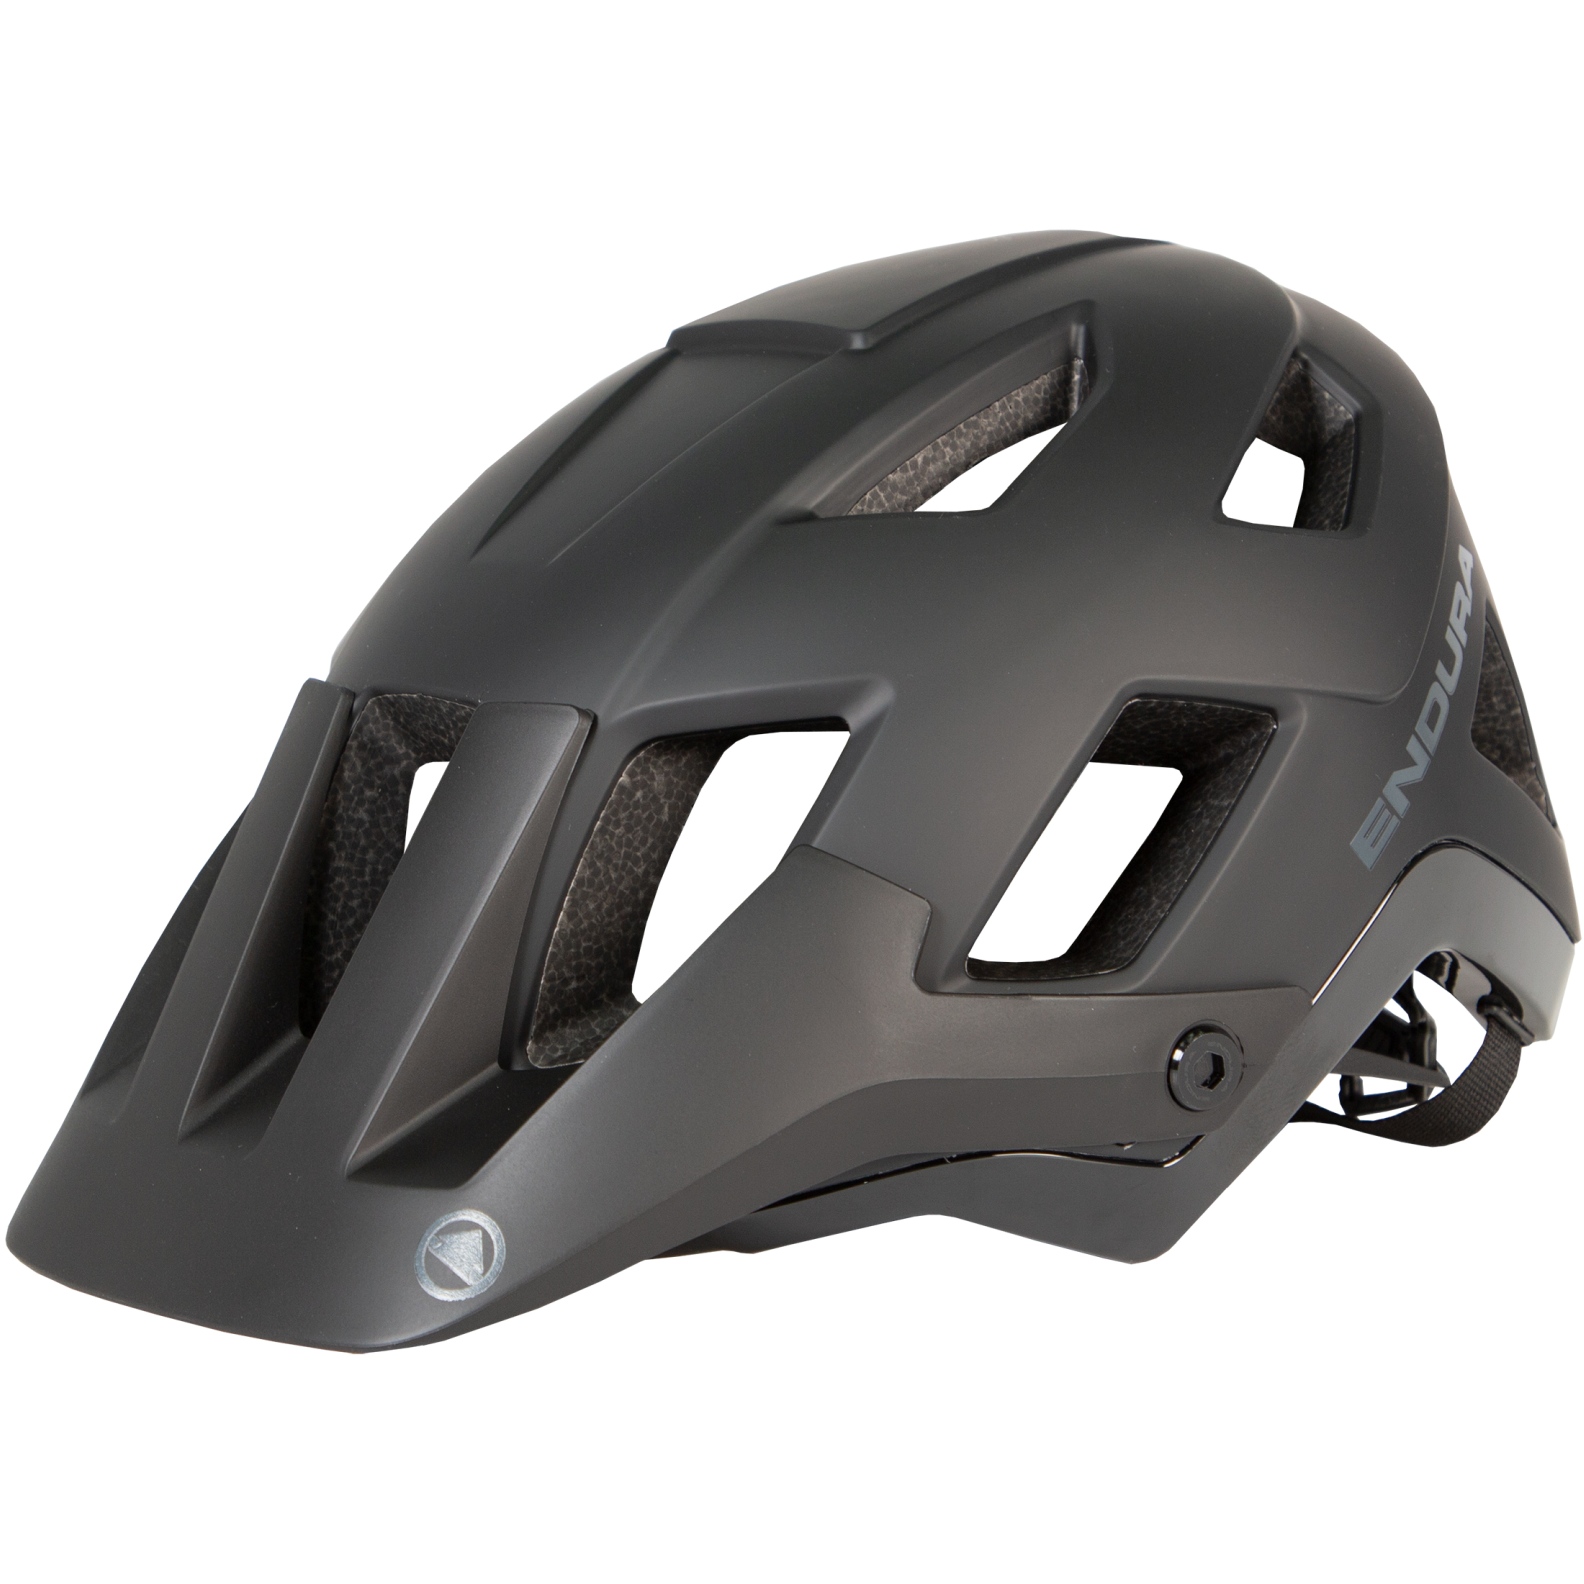 Produktbild von Endura Hummvee Plus MIPS® Helm - schwarz